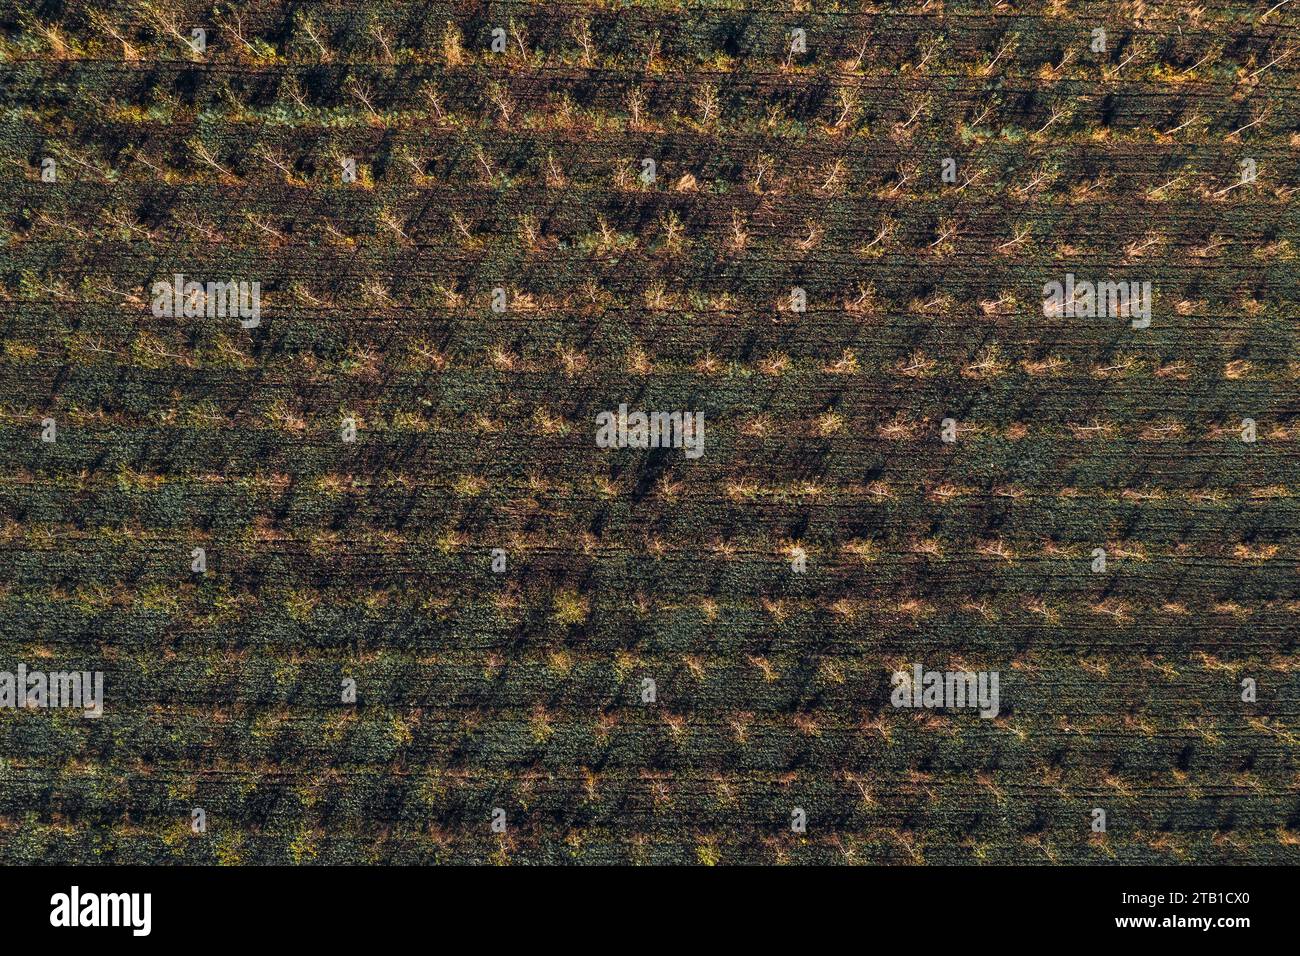 Cottonwood Baumschule Plantage von Drohne pov, Luftaufnahme von jungen kleinen Baumstäbchen, Blick von oben Stockfoto